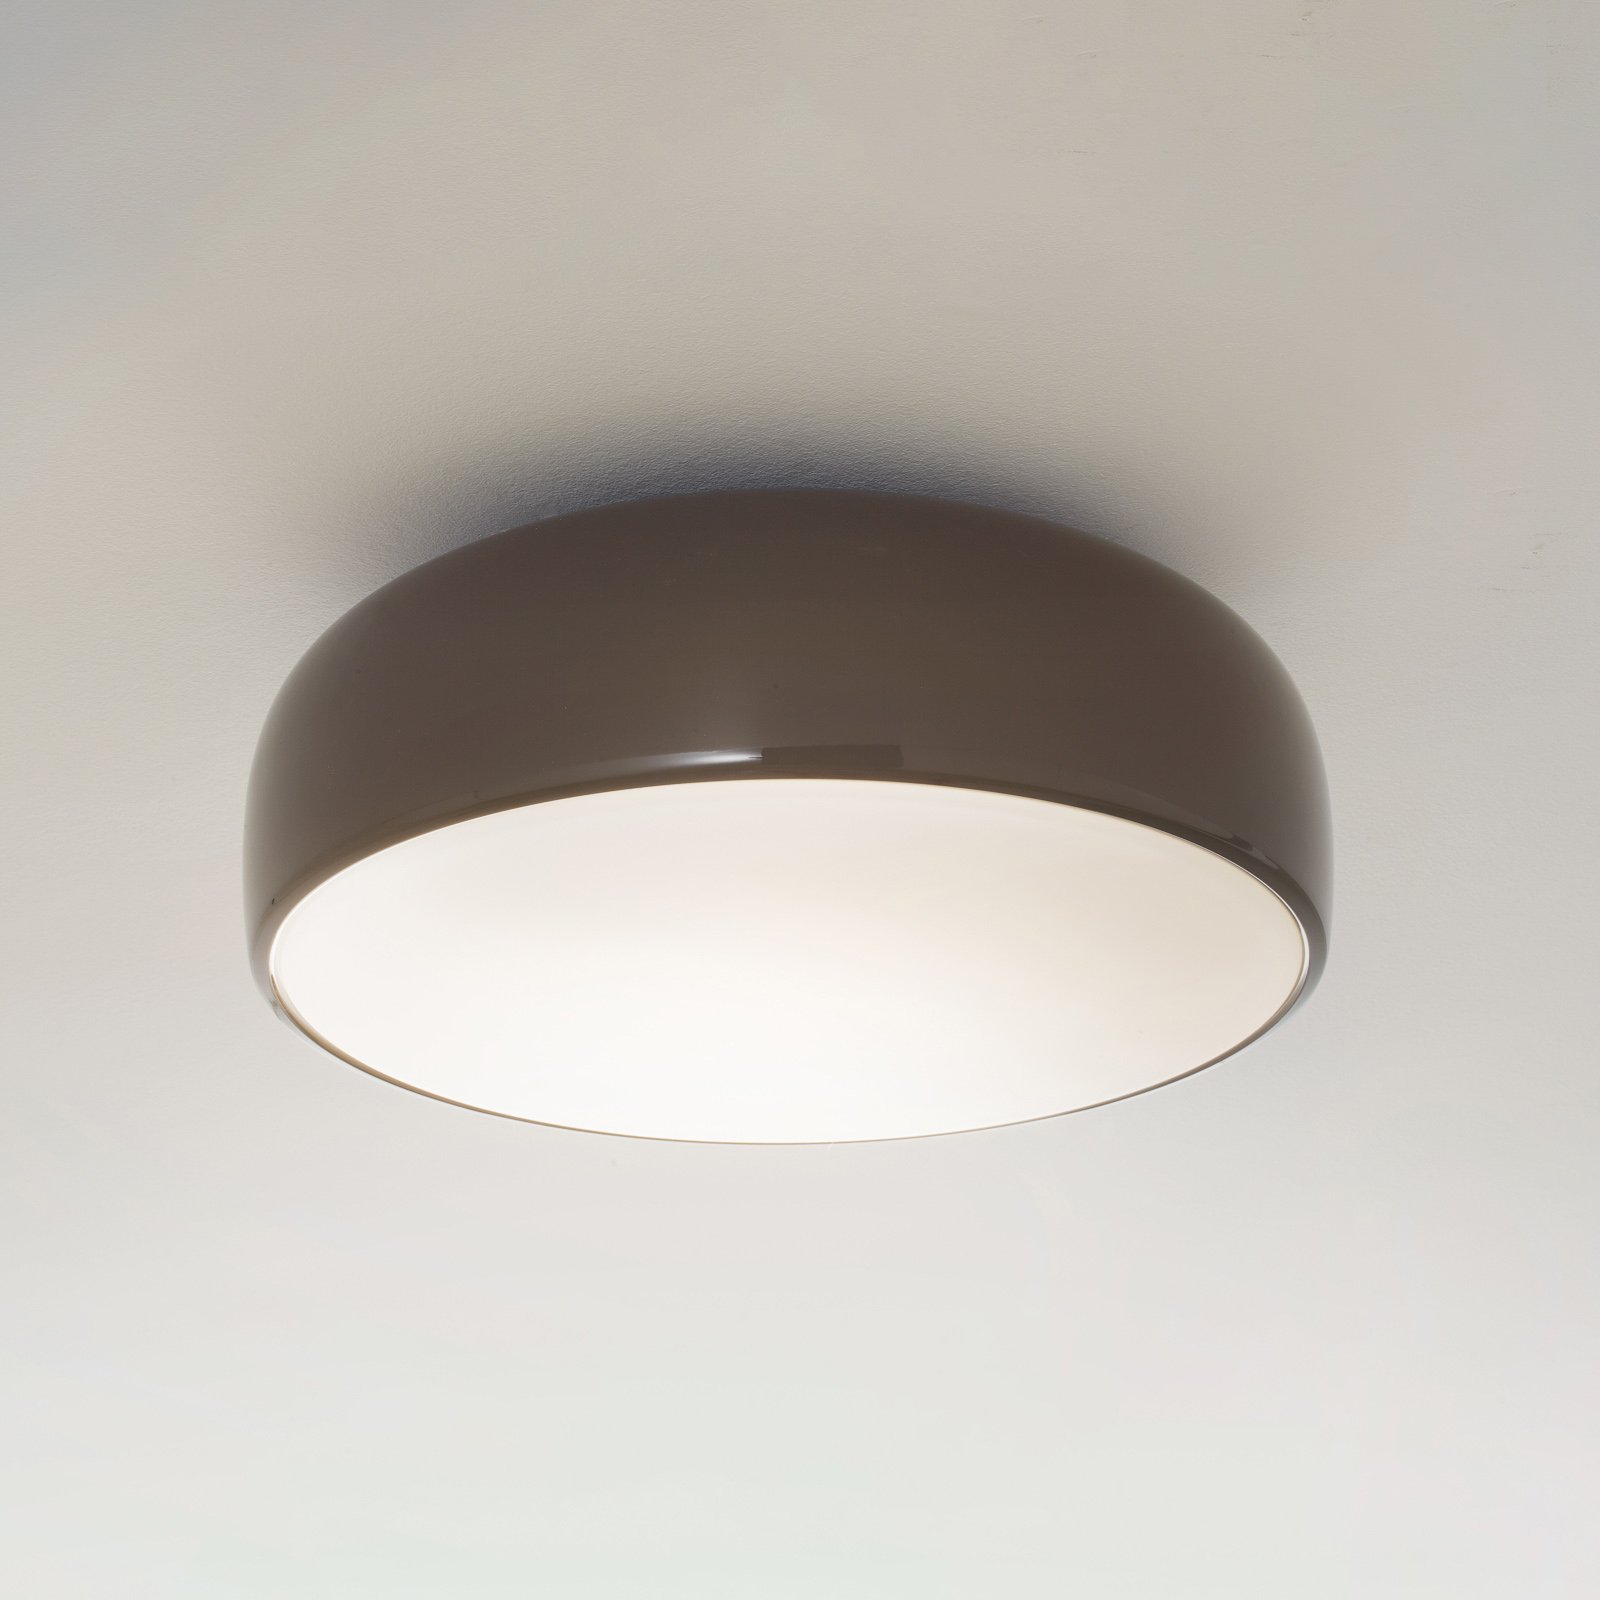 FLOS Smithfield C - ceiling light in grey